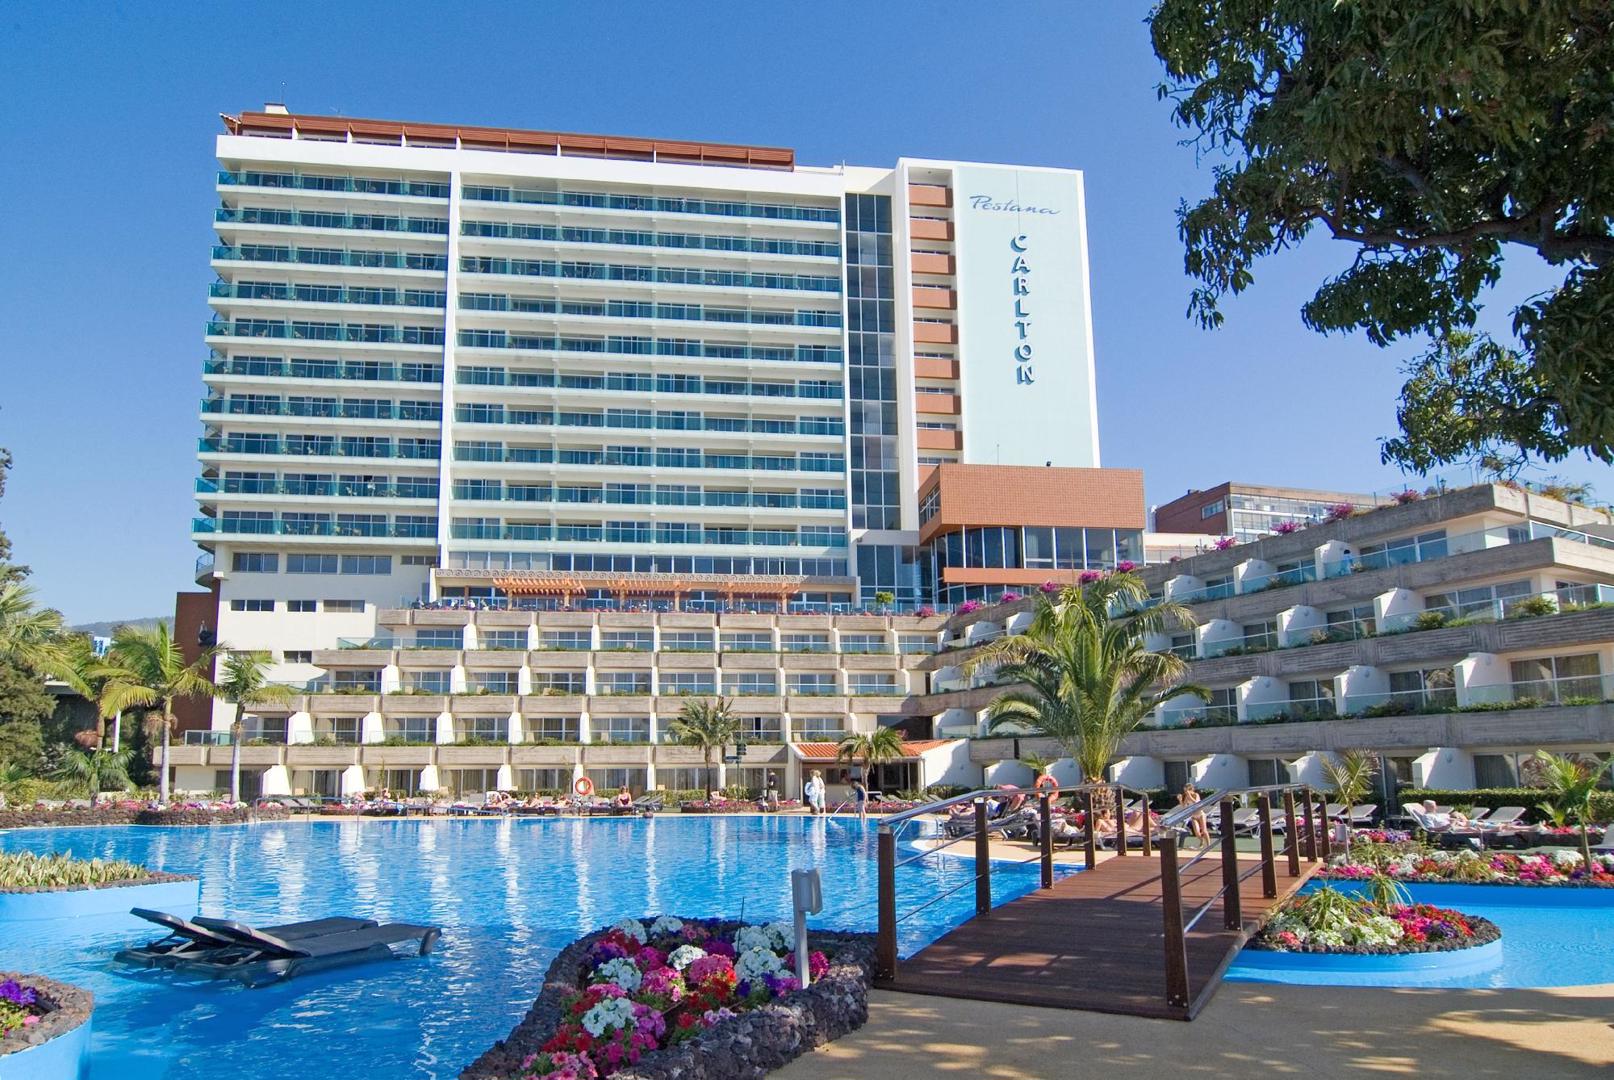 Pestana Carlton Madeira Premium Ocean Resort - Funchal - Portugal